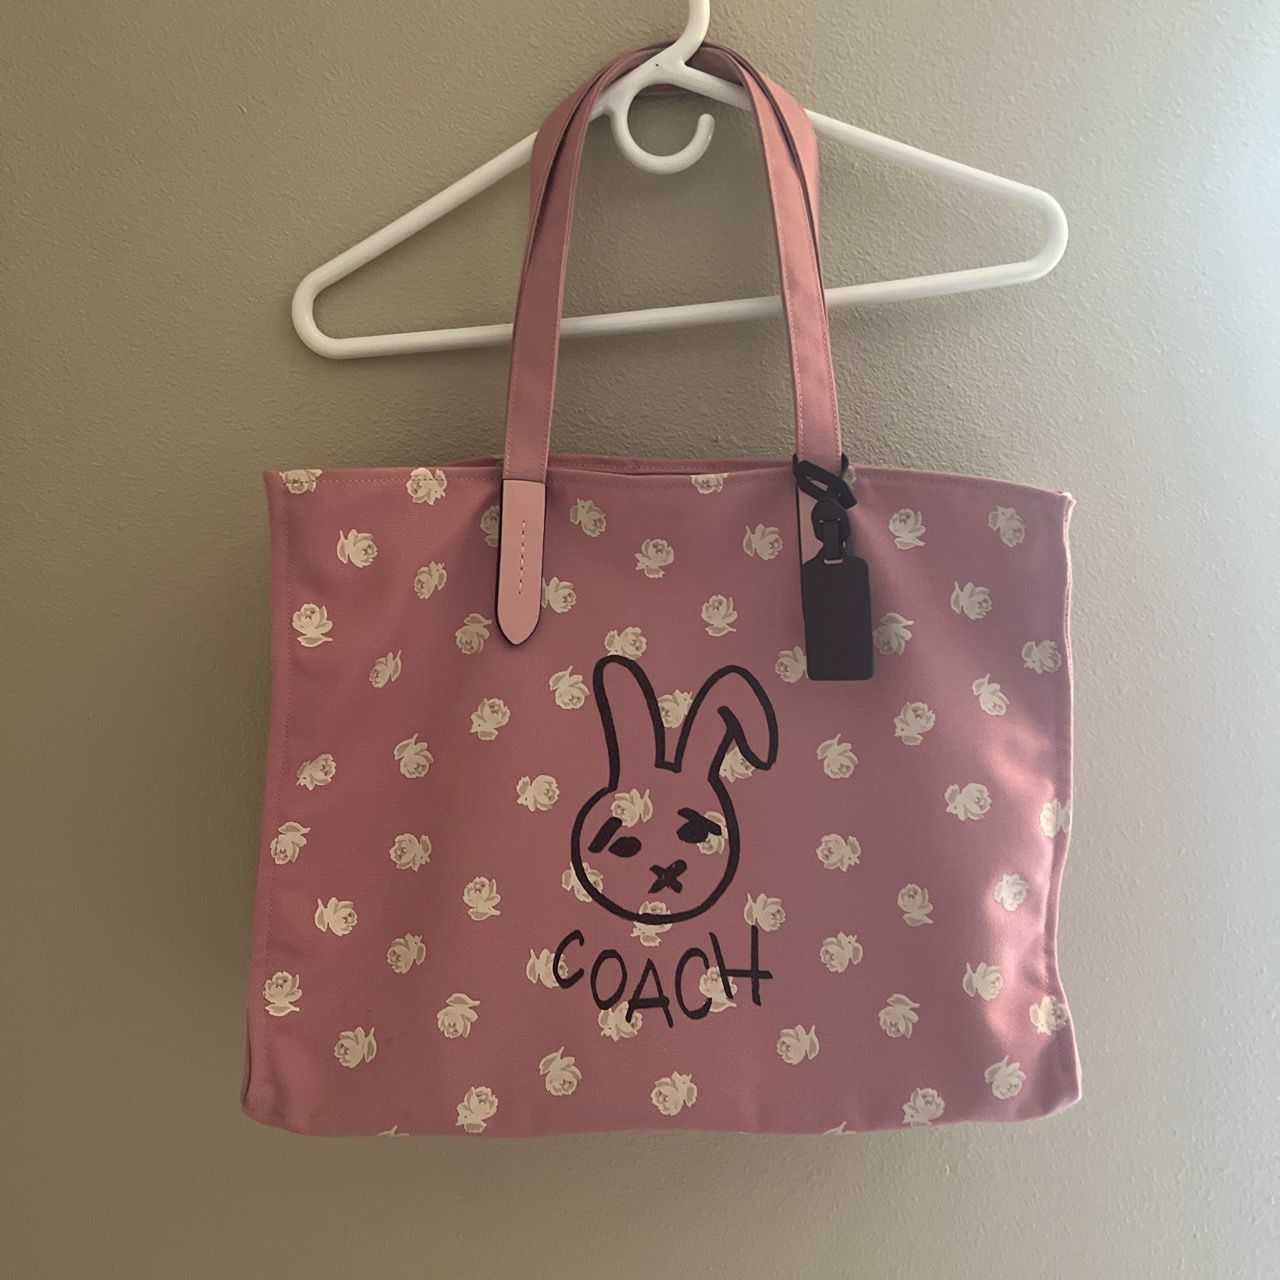 Coach Bunny Graphic Pink Canvas Tote Handbag Bag 